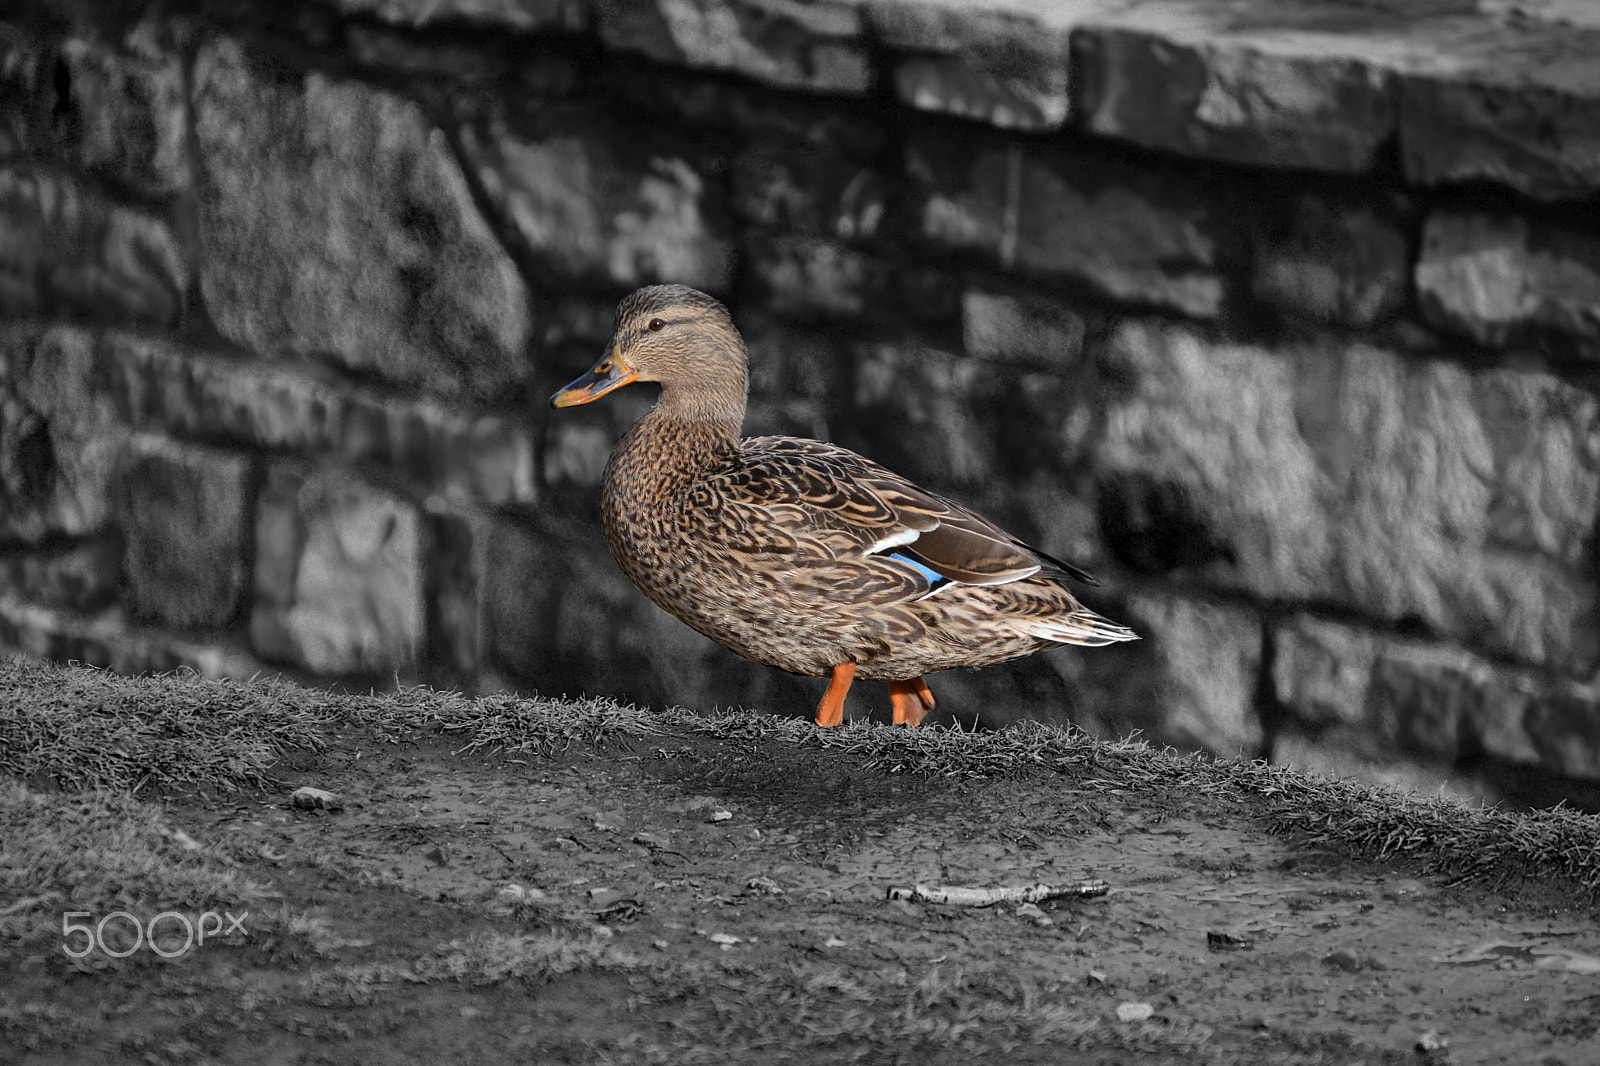 Nikon D7100 sample photo. Quack quack photography